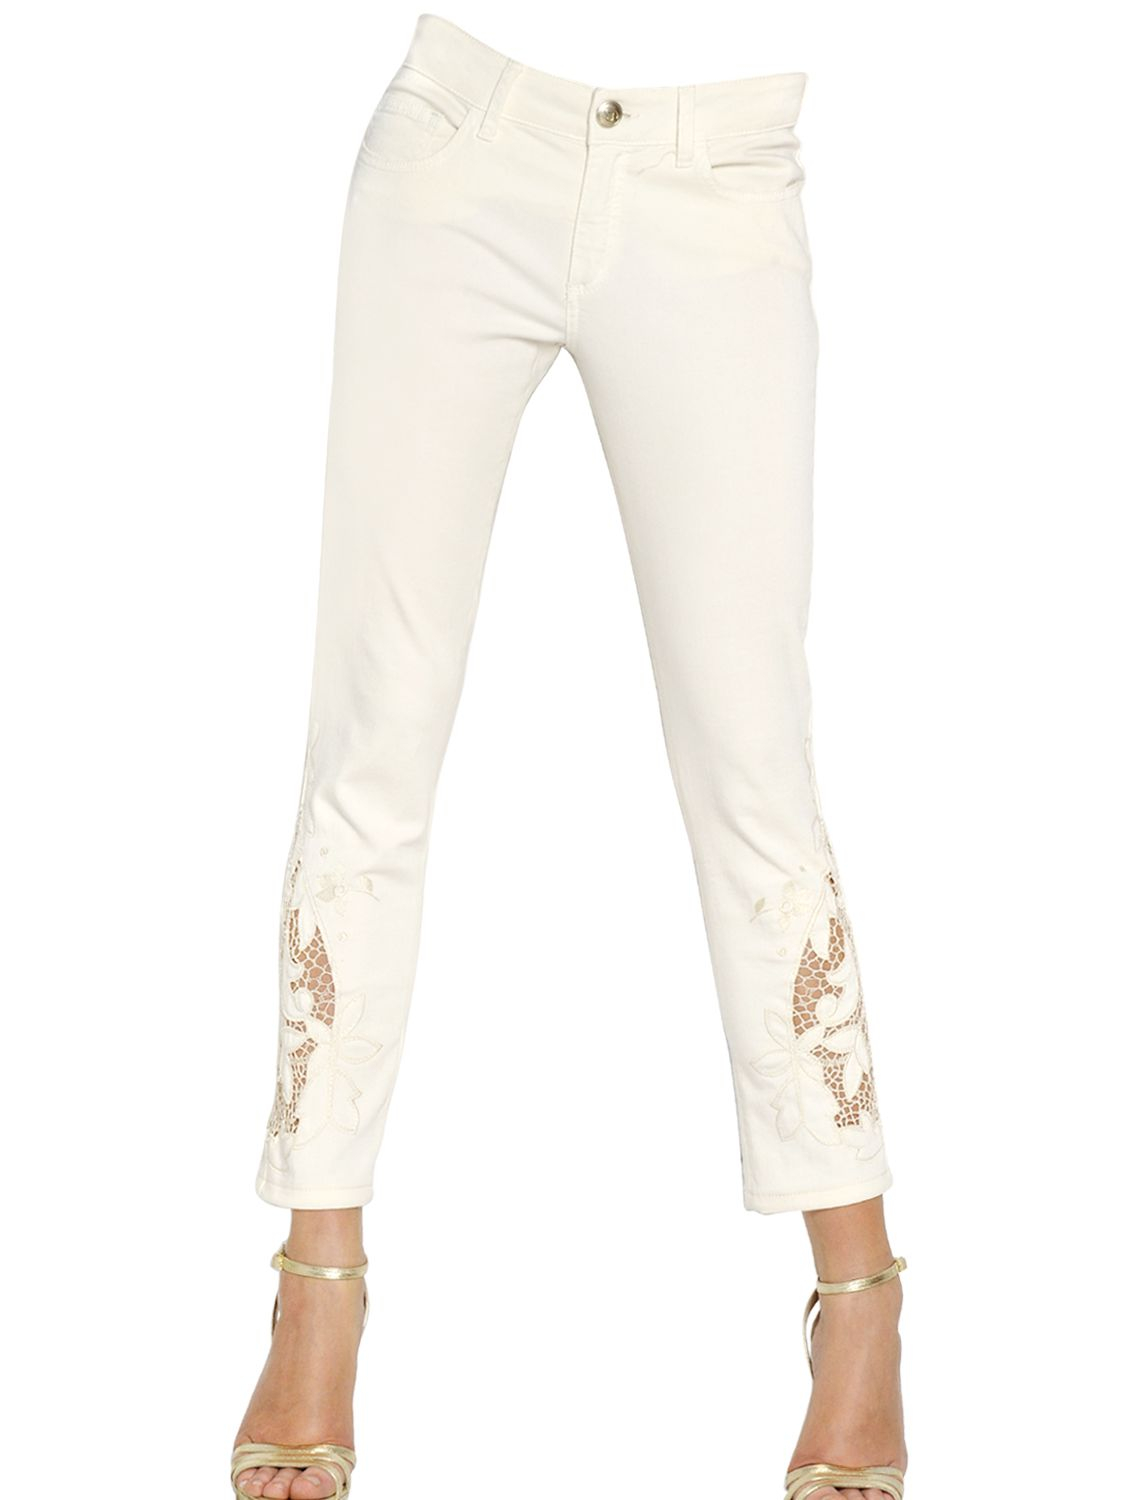 Lyst - Blumarine Lace Insert Cotton Denim Jeans in White